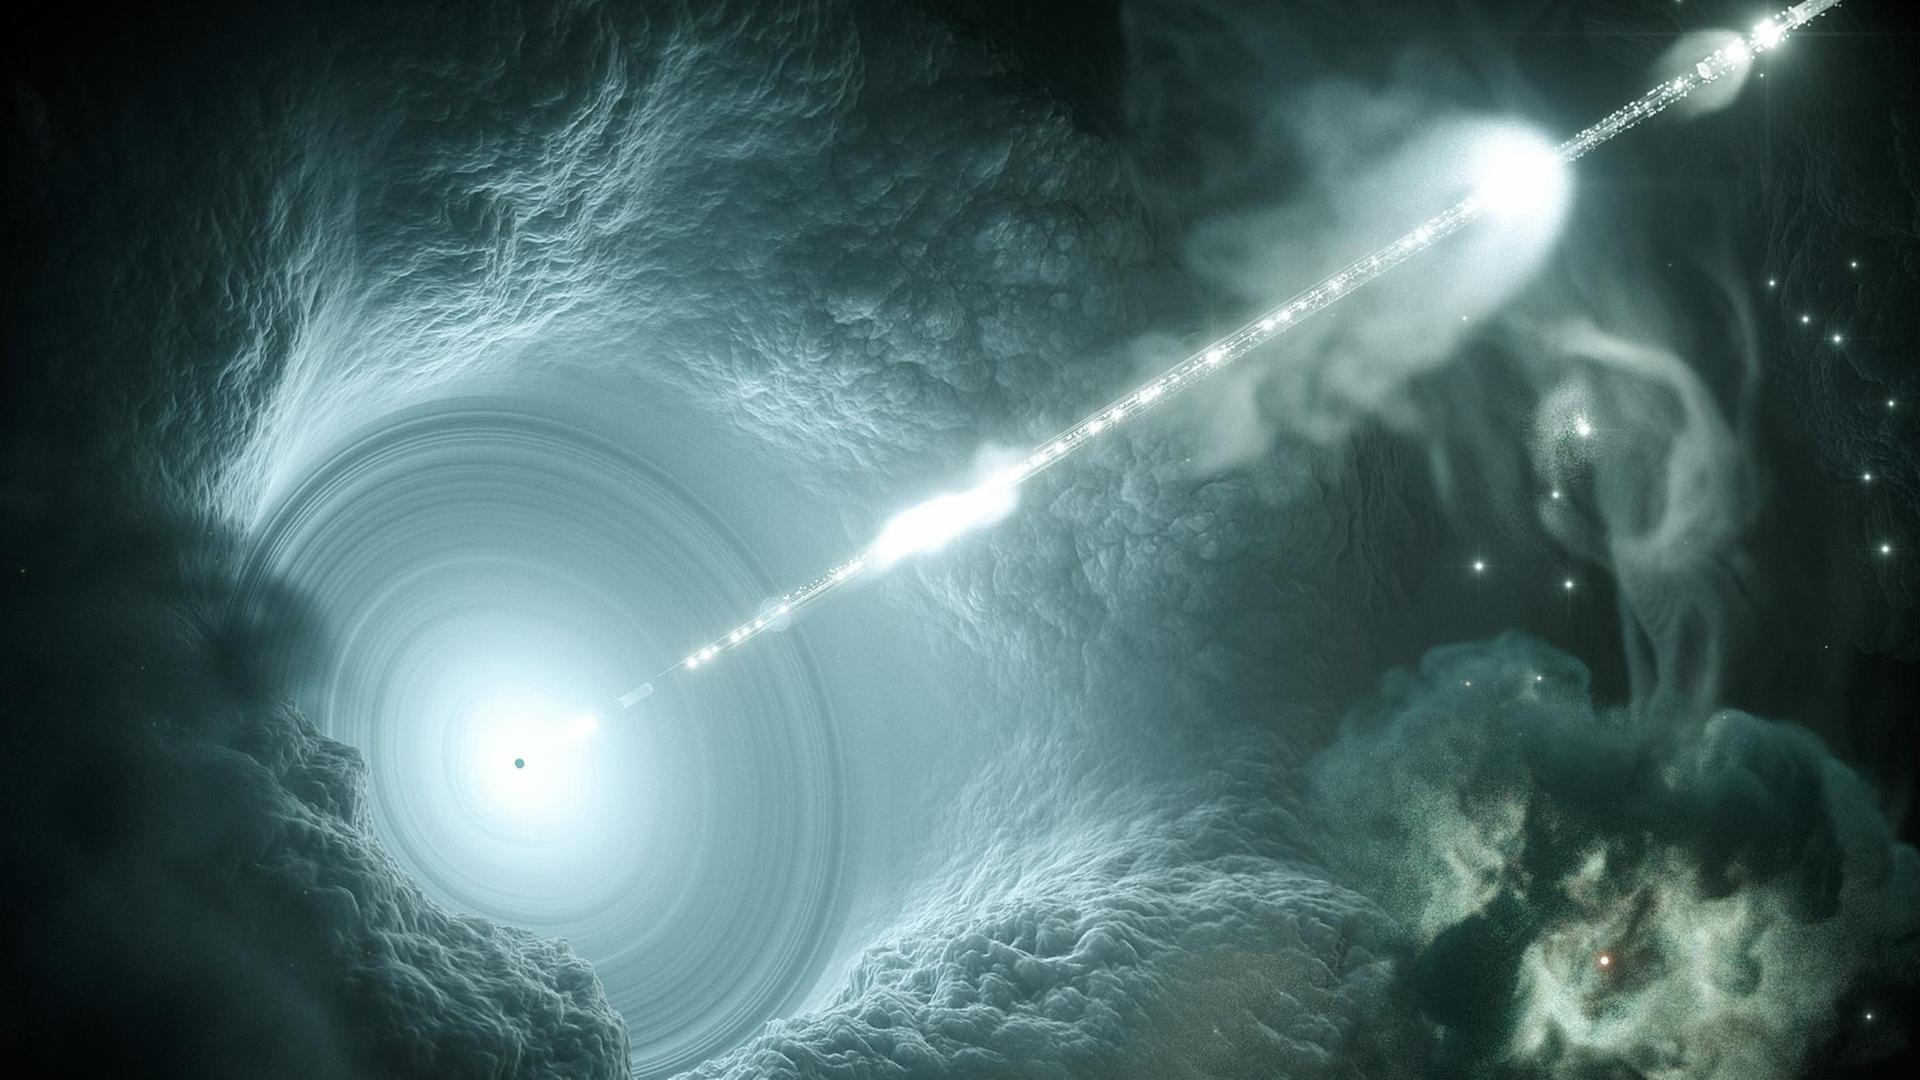 Künstlerische Darstellung des aktiven Galaxienkerns. Das supermassive Schwarze Loch im Zentrum der Akkretionsscheibe schickt einen energiereichen, scharf gebündelten Teilchenstrahl senkrecht ins All